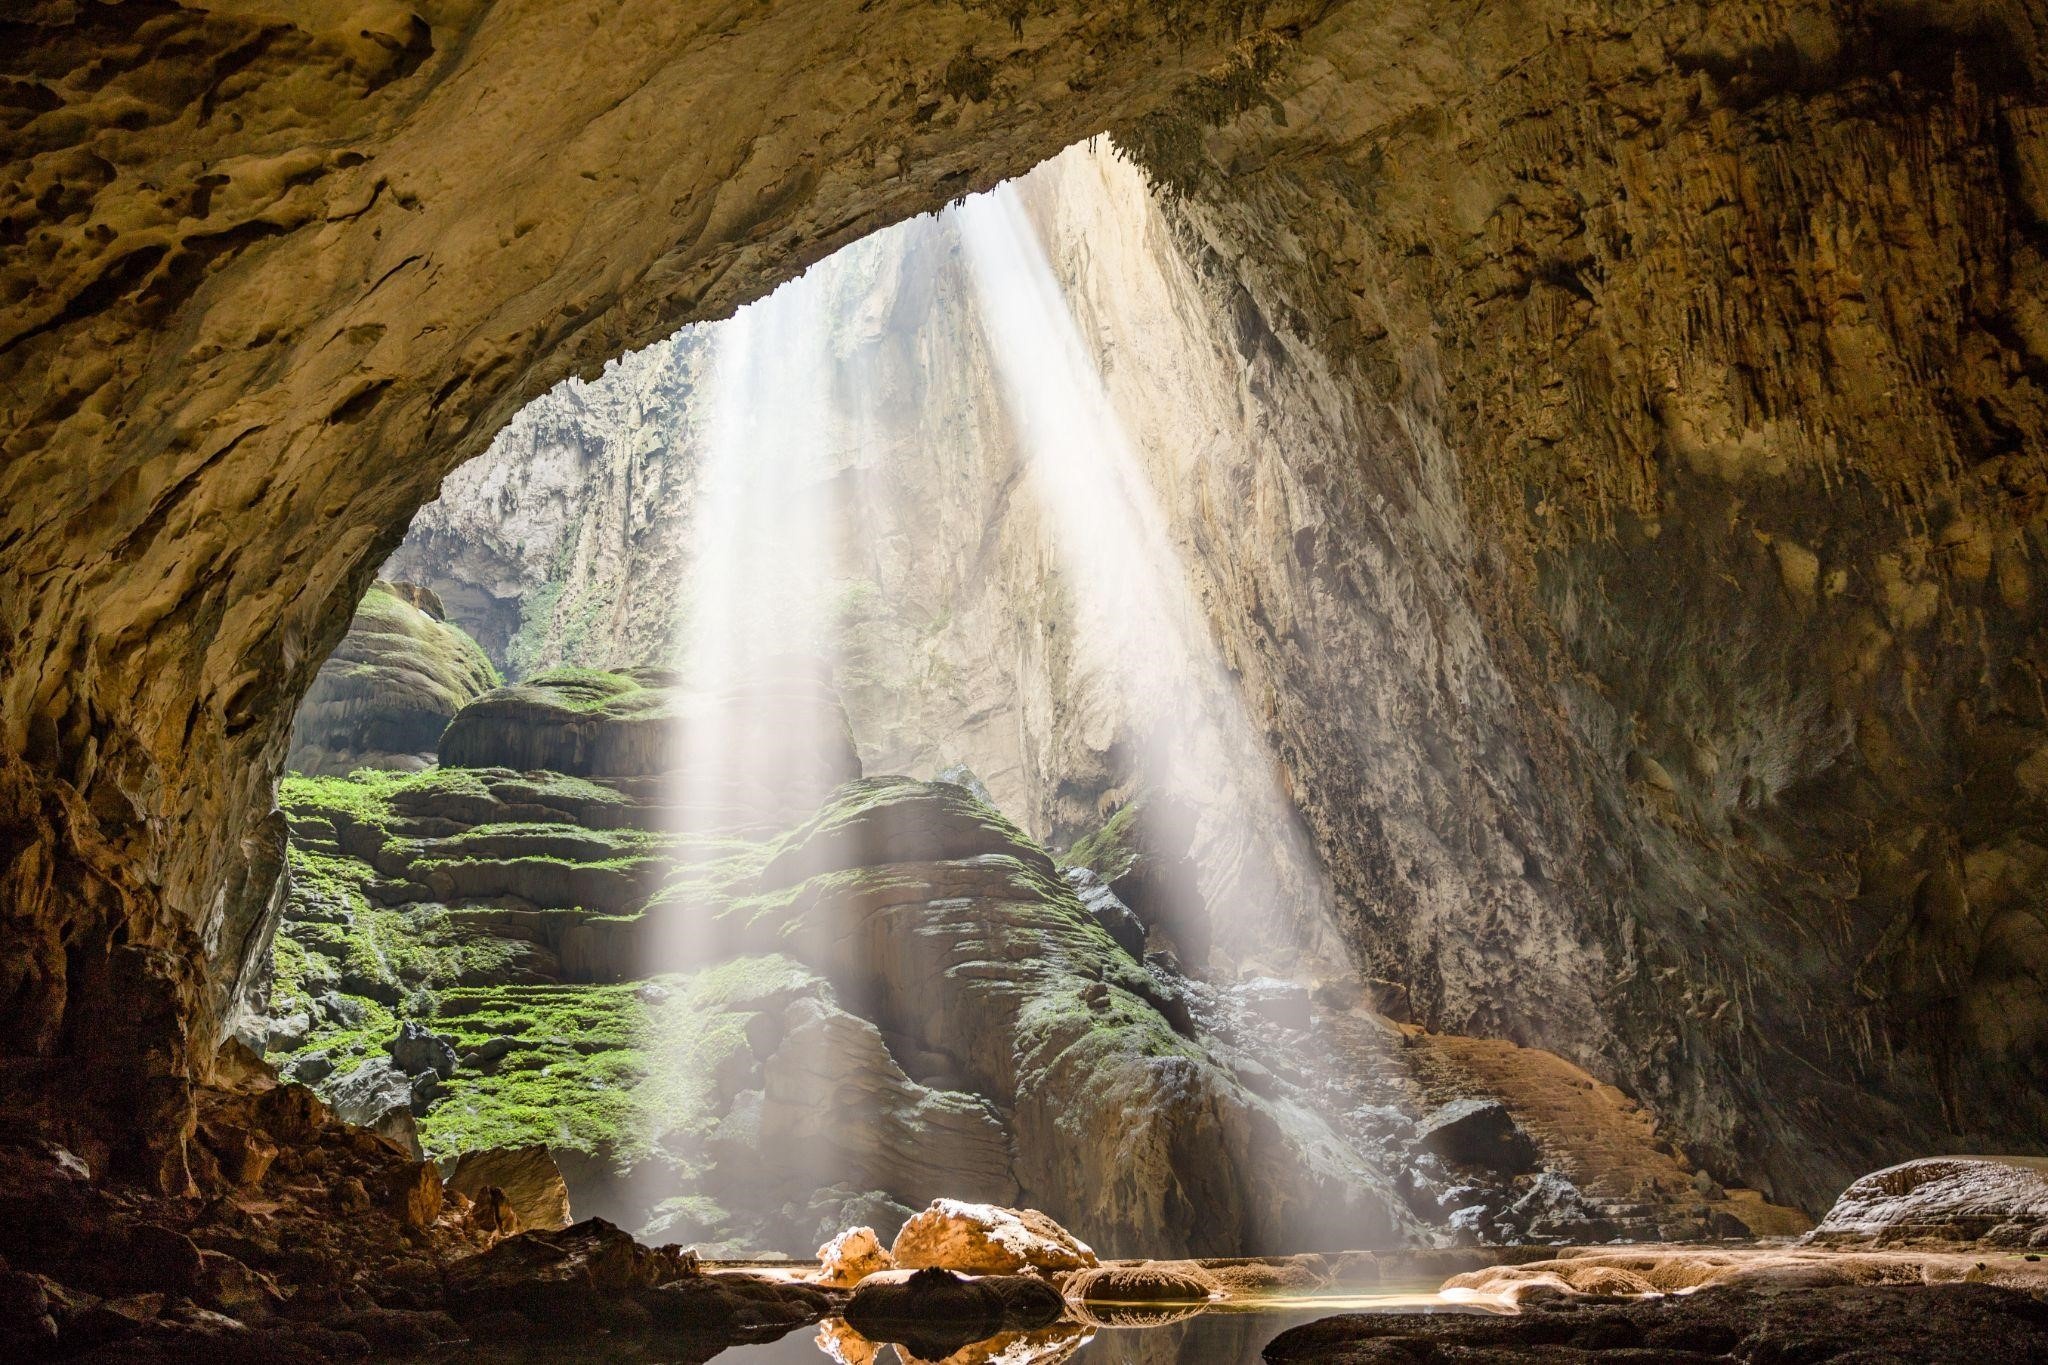 Hang Sơn Đoòng: Hãy chiêm ngưỡng vẻ đẹp kỳ vỹ của Hang Sơn Đoòng, hang động lớn nhất thế giới với nhiều phong cảnh độc đáo. Khám phá những hình ảnh hoang sơ, nhiều màu sắc của hang động sẽ đem lại cho bạn những trải nghiệm khó quên.